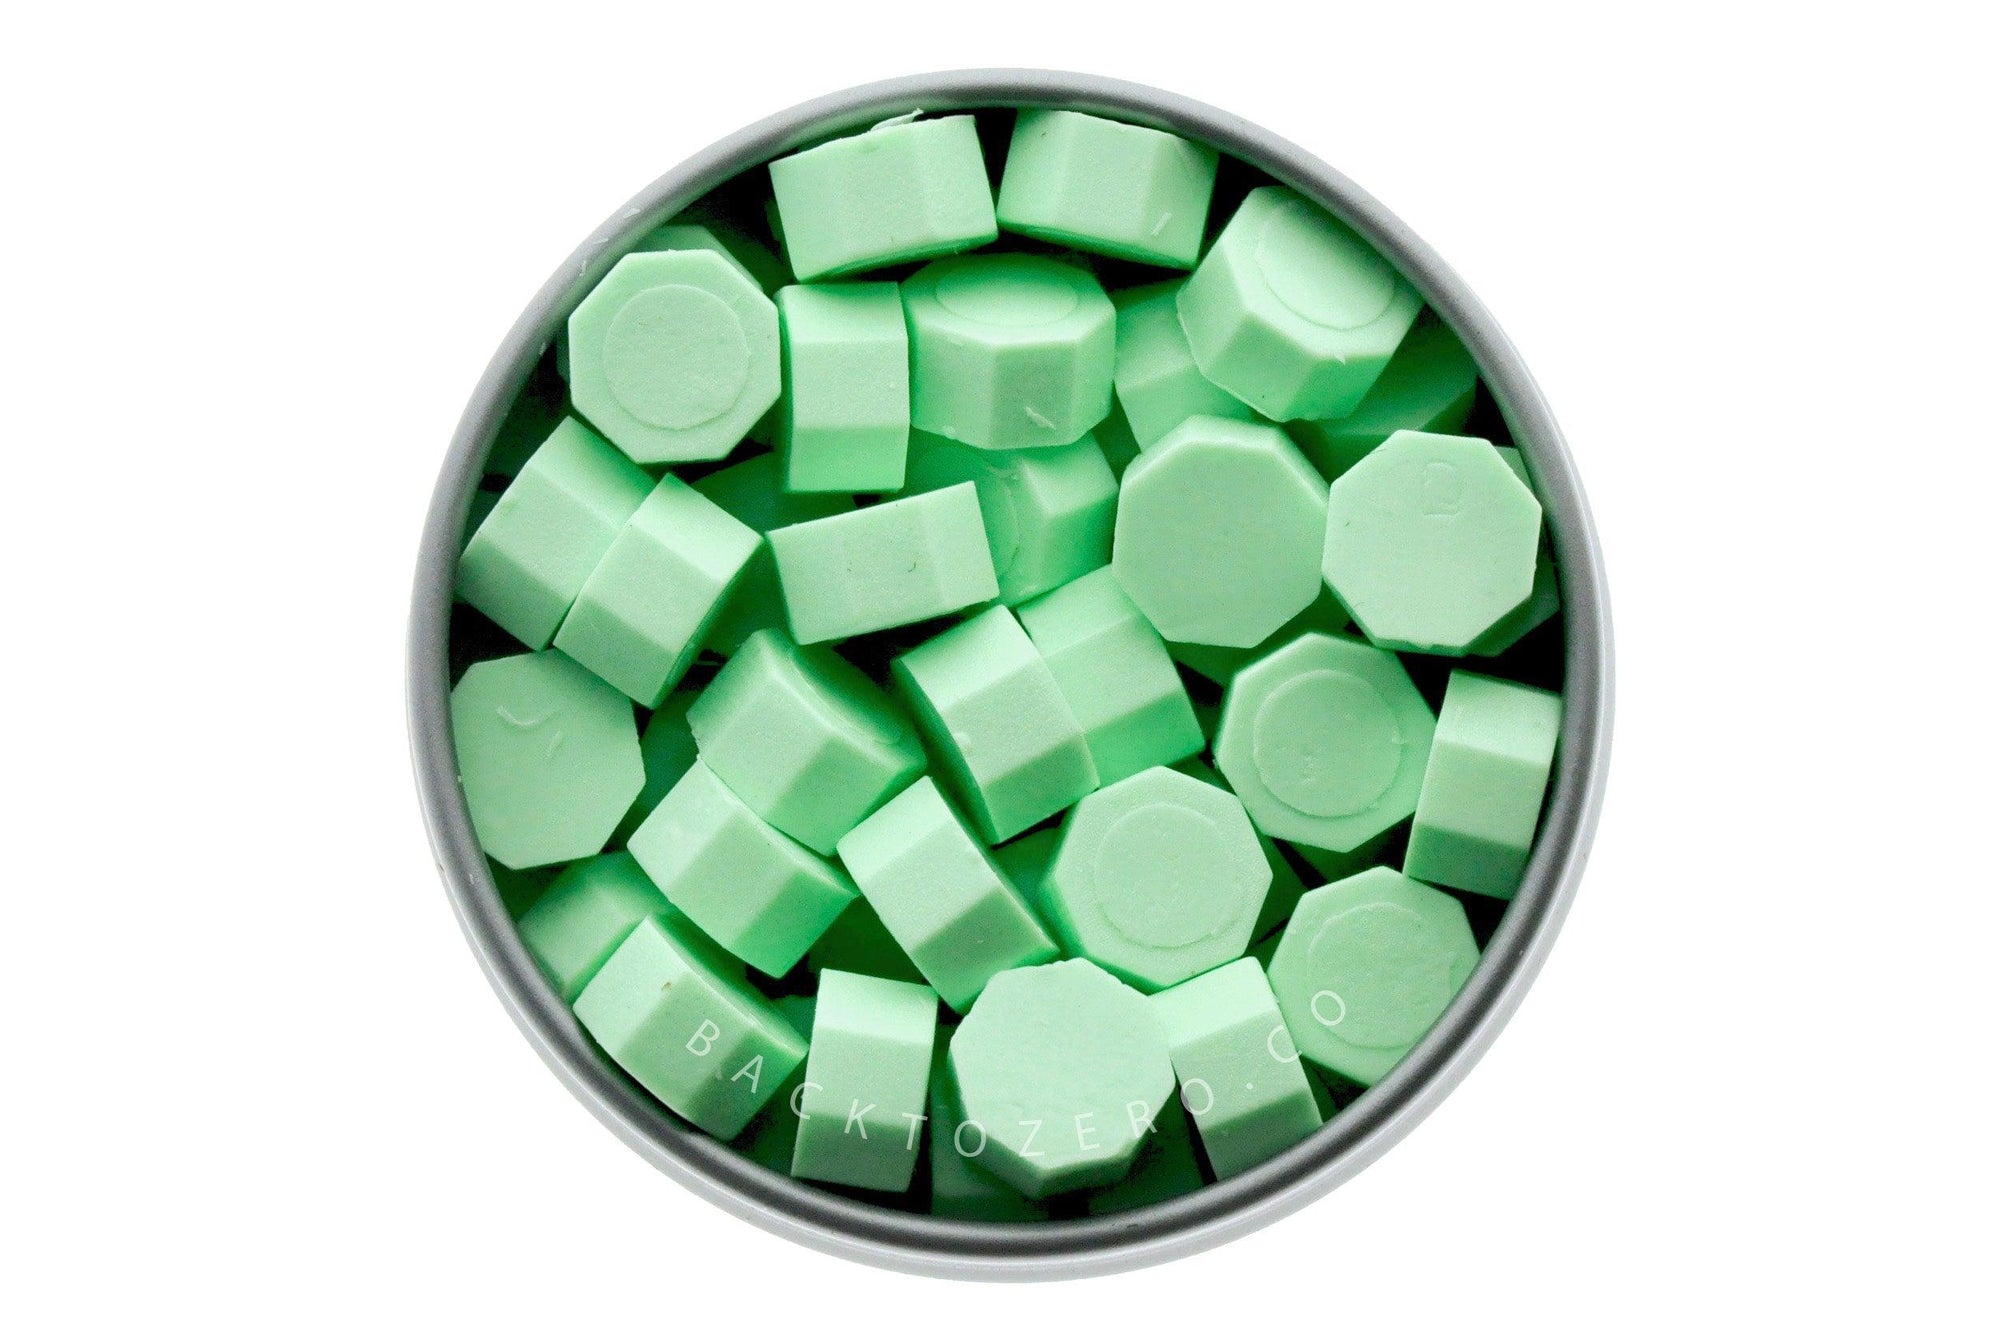 Cream Green Octagon Sealing Wax Beads - Backtozero B20 - cream, green, octagon bead, pastel, sealing wax, tin, Wax Beads